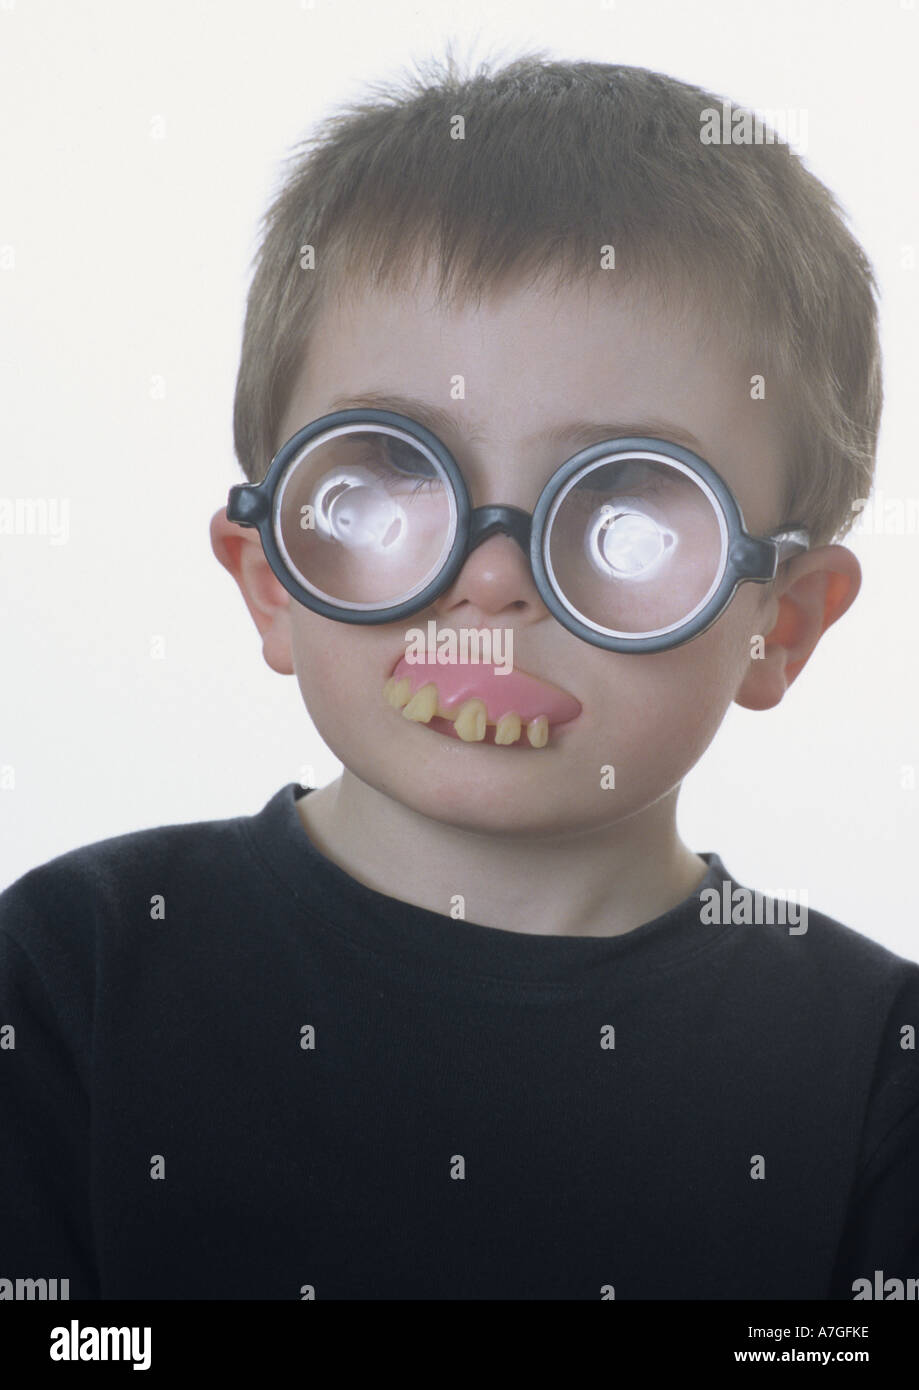 Bambini stupidi immagini e fotografie stock ad alta risoluzione - Alamy